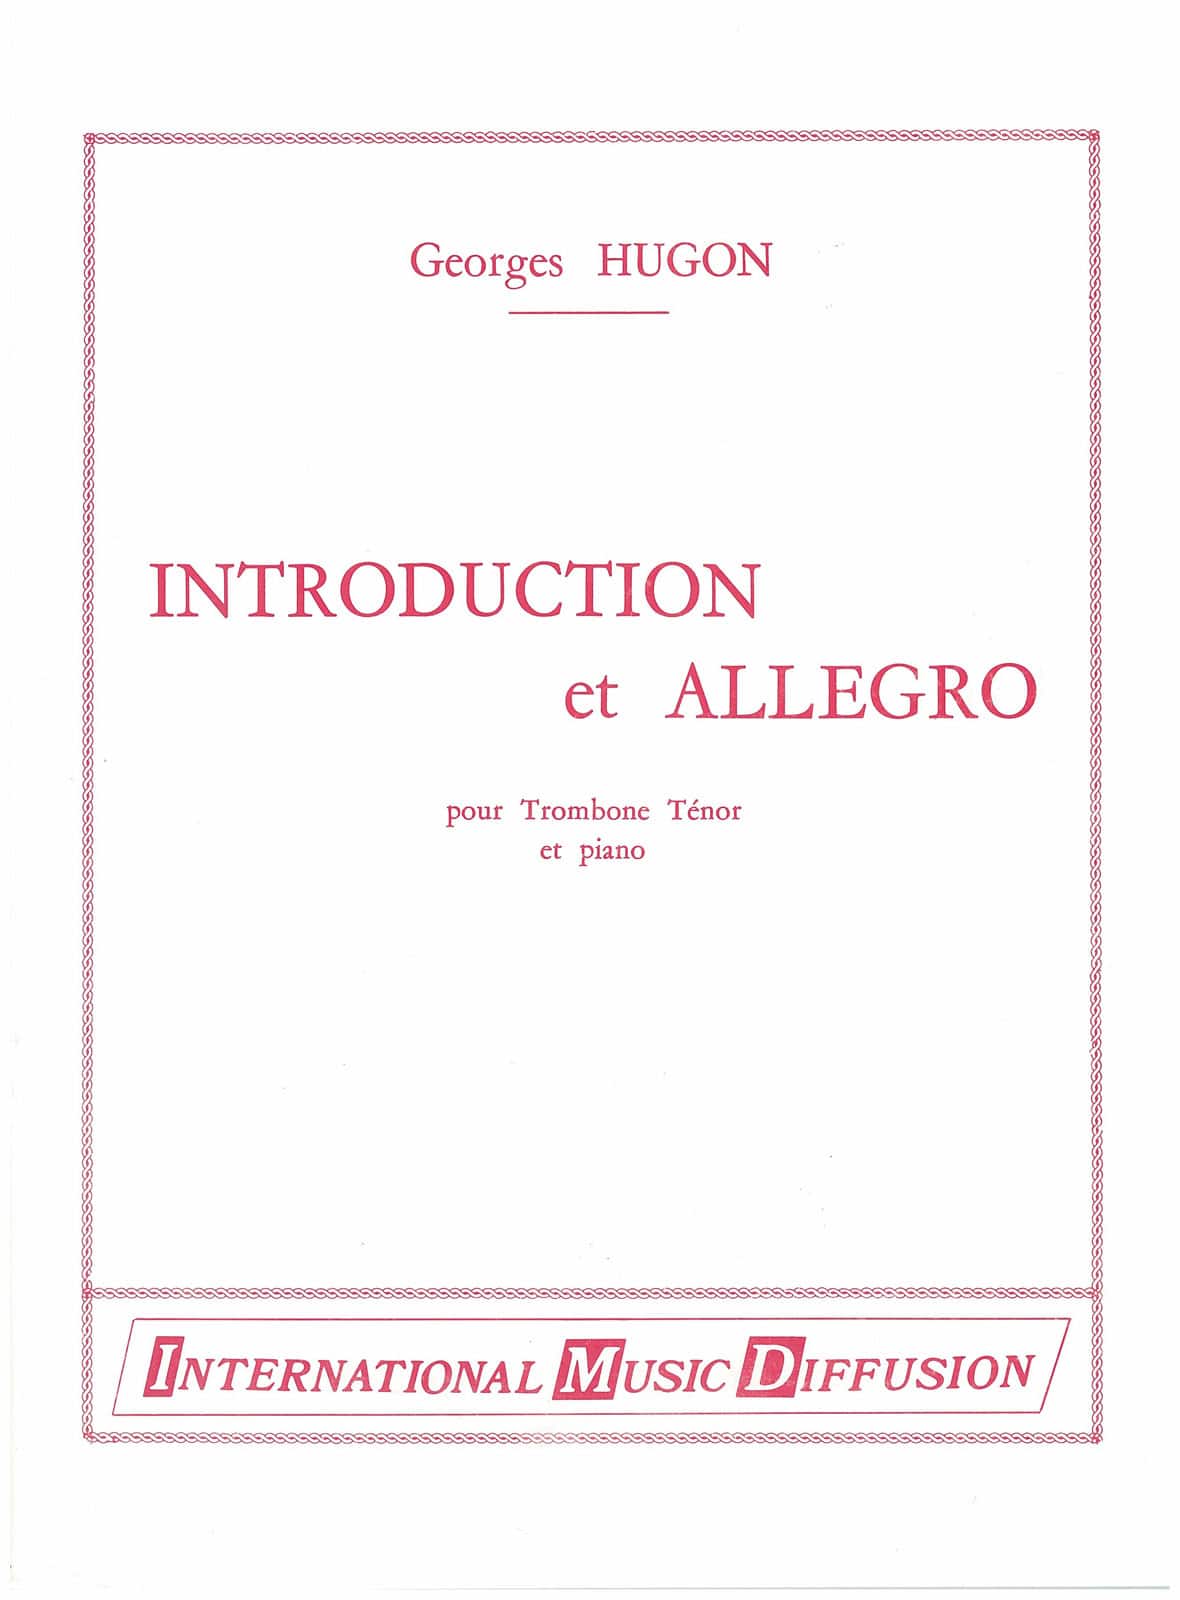 IMD ARPEGES HUGON - INTRODUCTION ET ALLEGRO - TROMBONE & PIANO